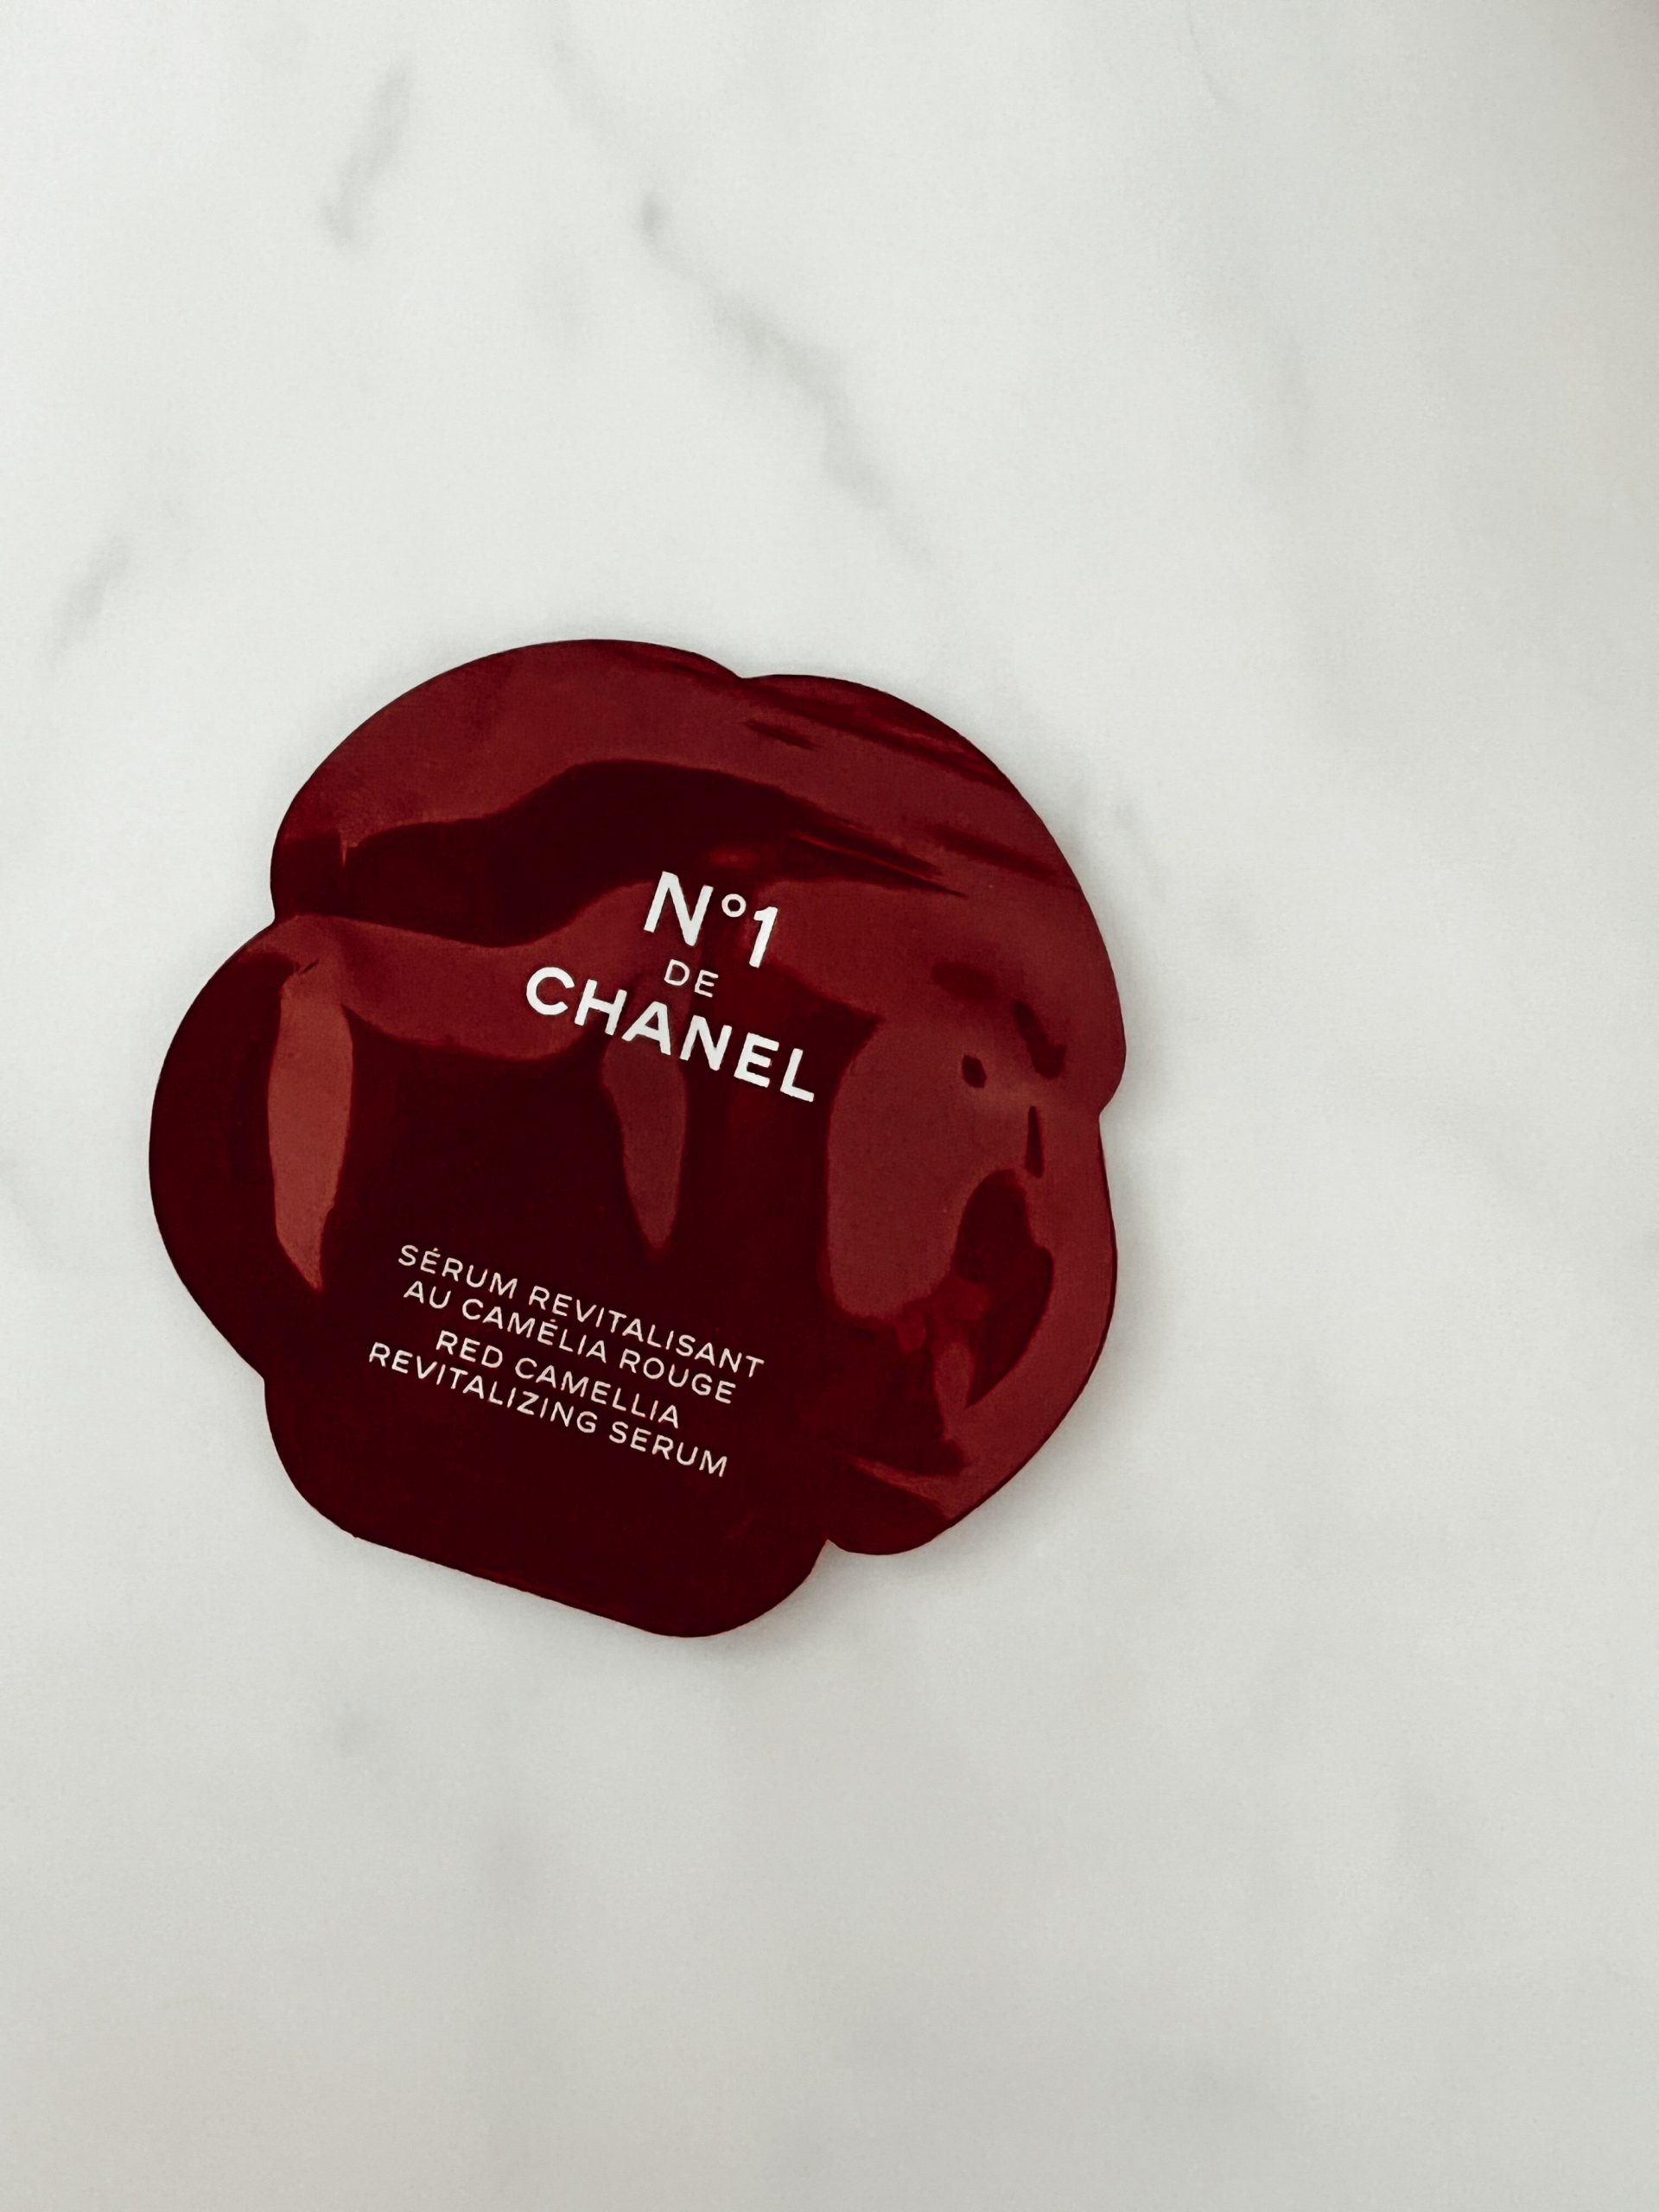 Probe des revitalisierenden Serums von Chanel in Form einer roten Rose